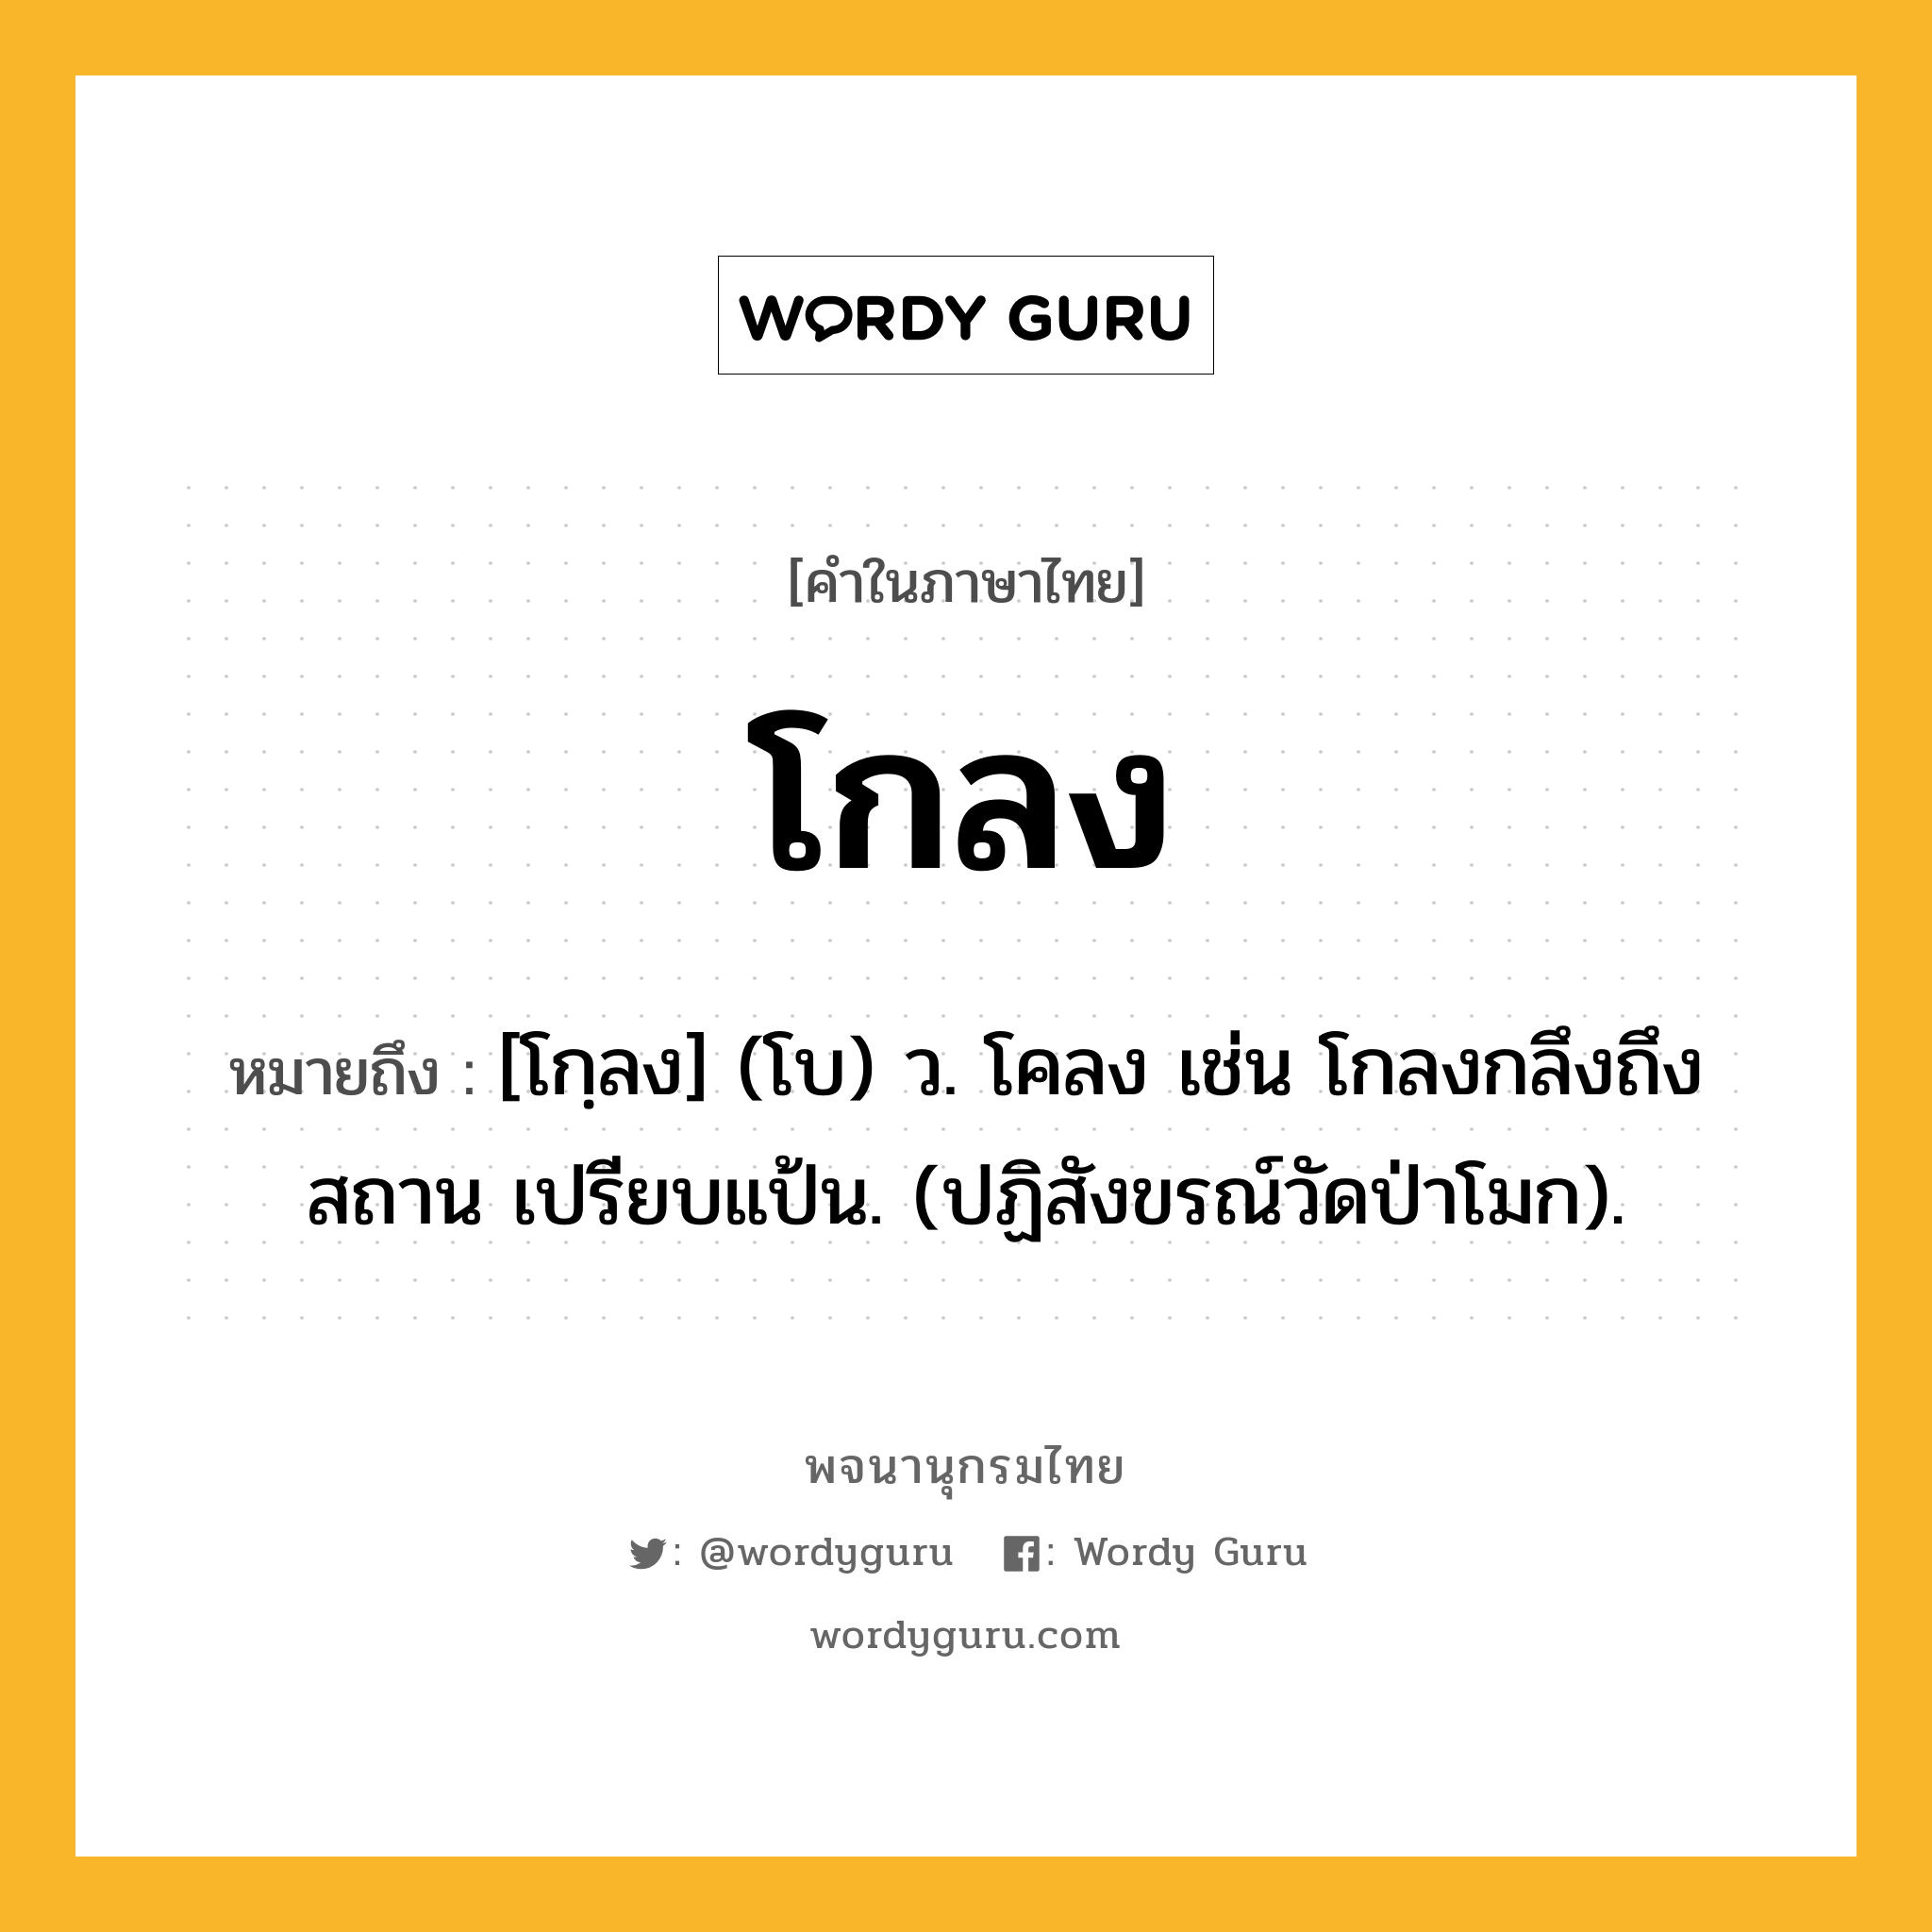 โกลง หมายถึงอะไร?, คำในภาษาไทย โกลง หมายถึง [โกฺลง] (โบ) ว. โคลง เช่น โกลงกลึงถึงสถาน เปรียบแป้น. (ปฏิสังขรณ์วัดป่าโมก).